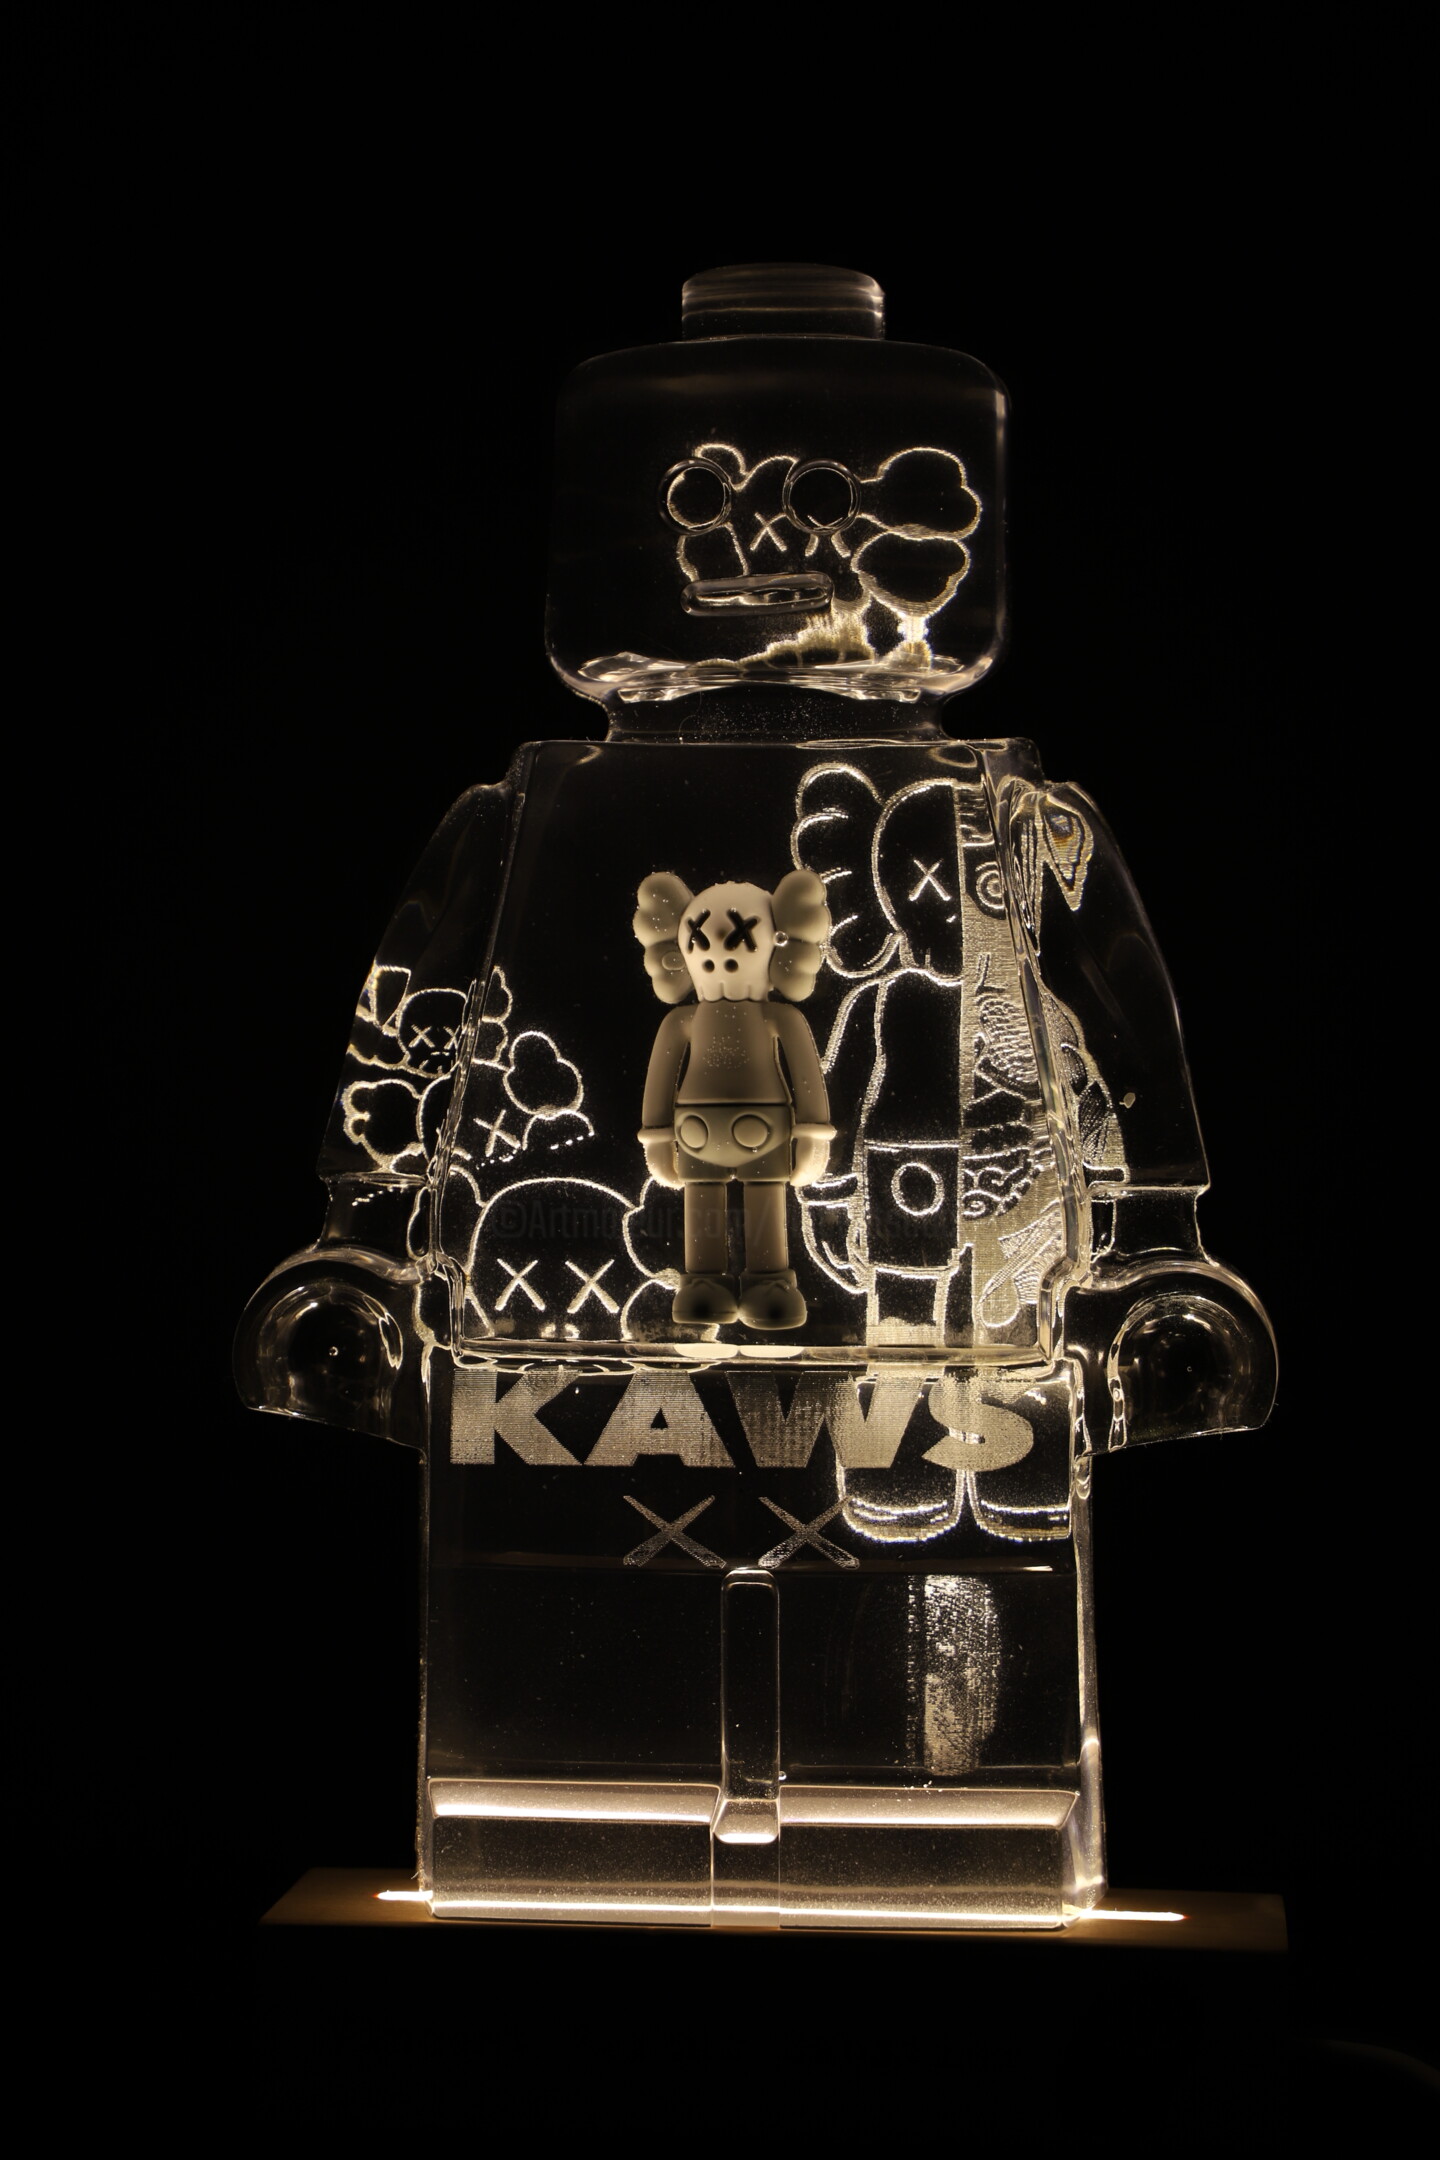 Roboclusion Kaws & Louis Vuitton, Sculpture by Vincent Sabatier (VerSus)